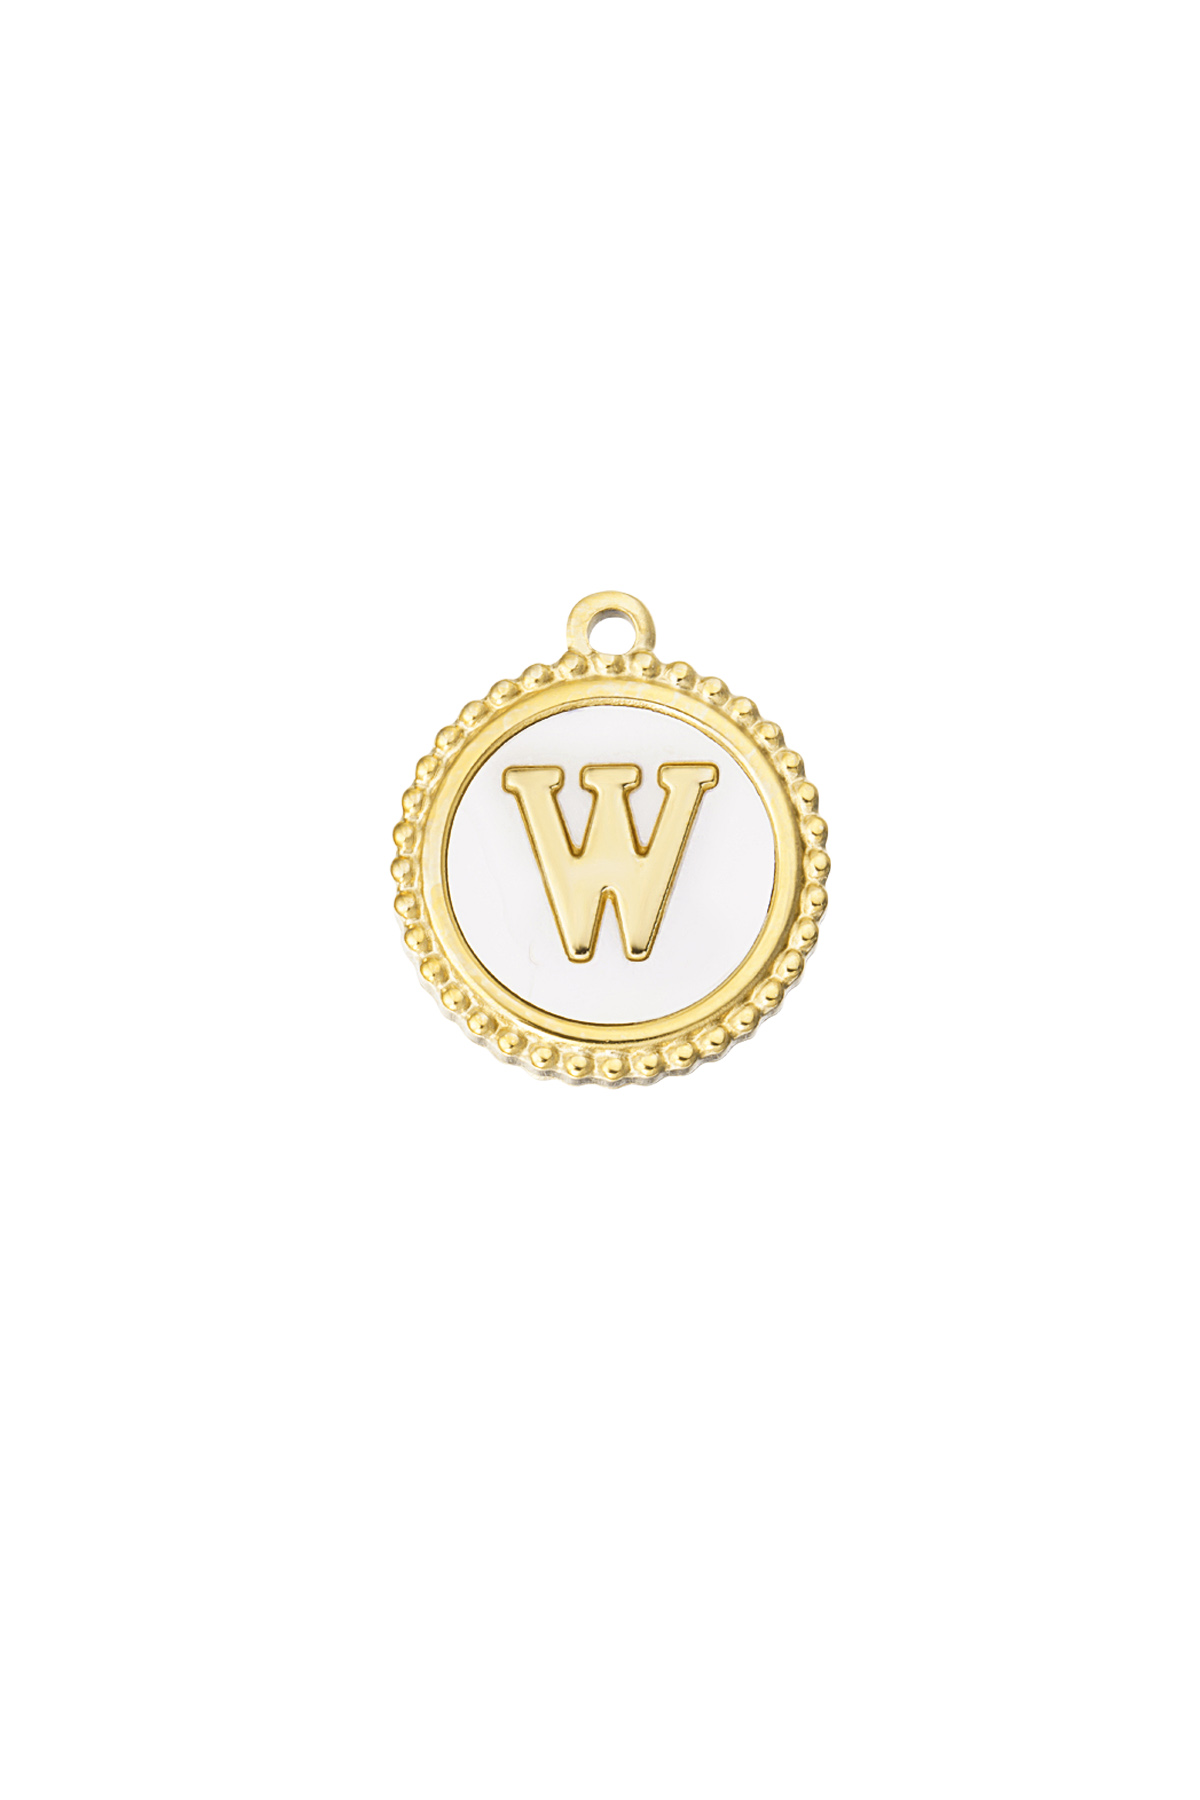 Oro / Charm elegante W - oro/blanco Imagen20